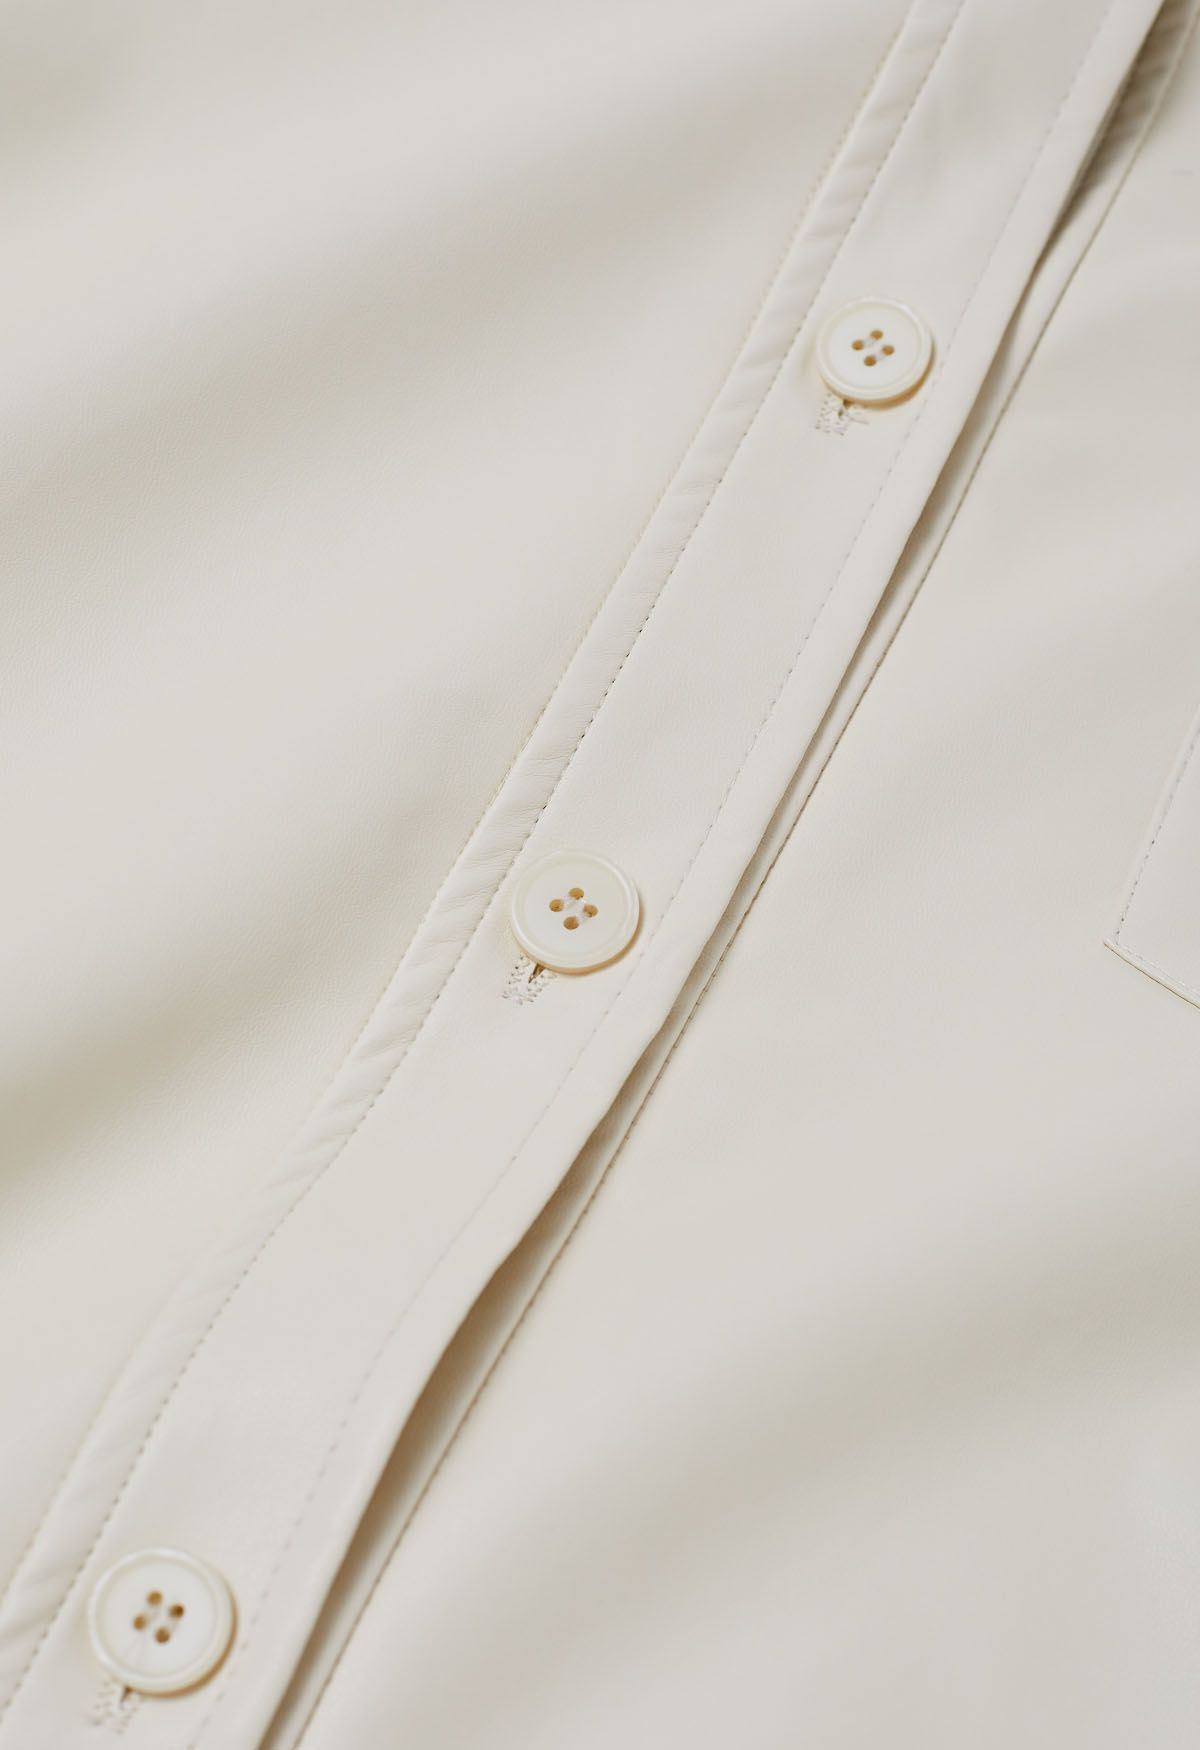 Chaqueta estilo camisa informal elegante de piel sintética en marfil